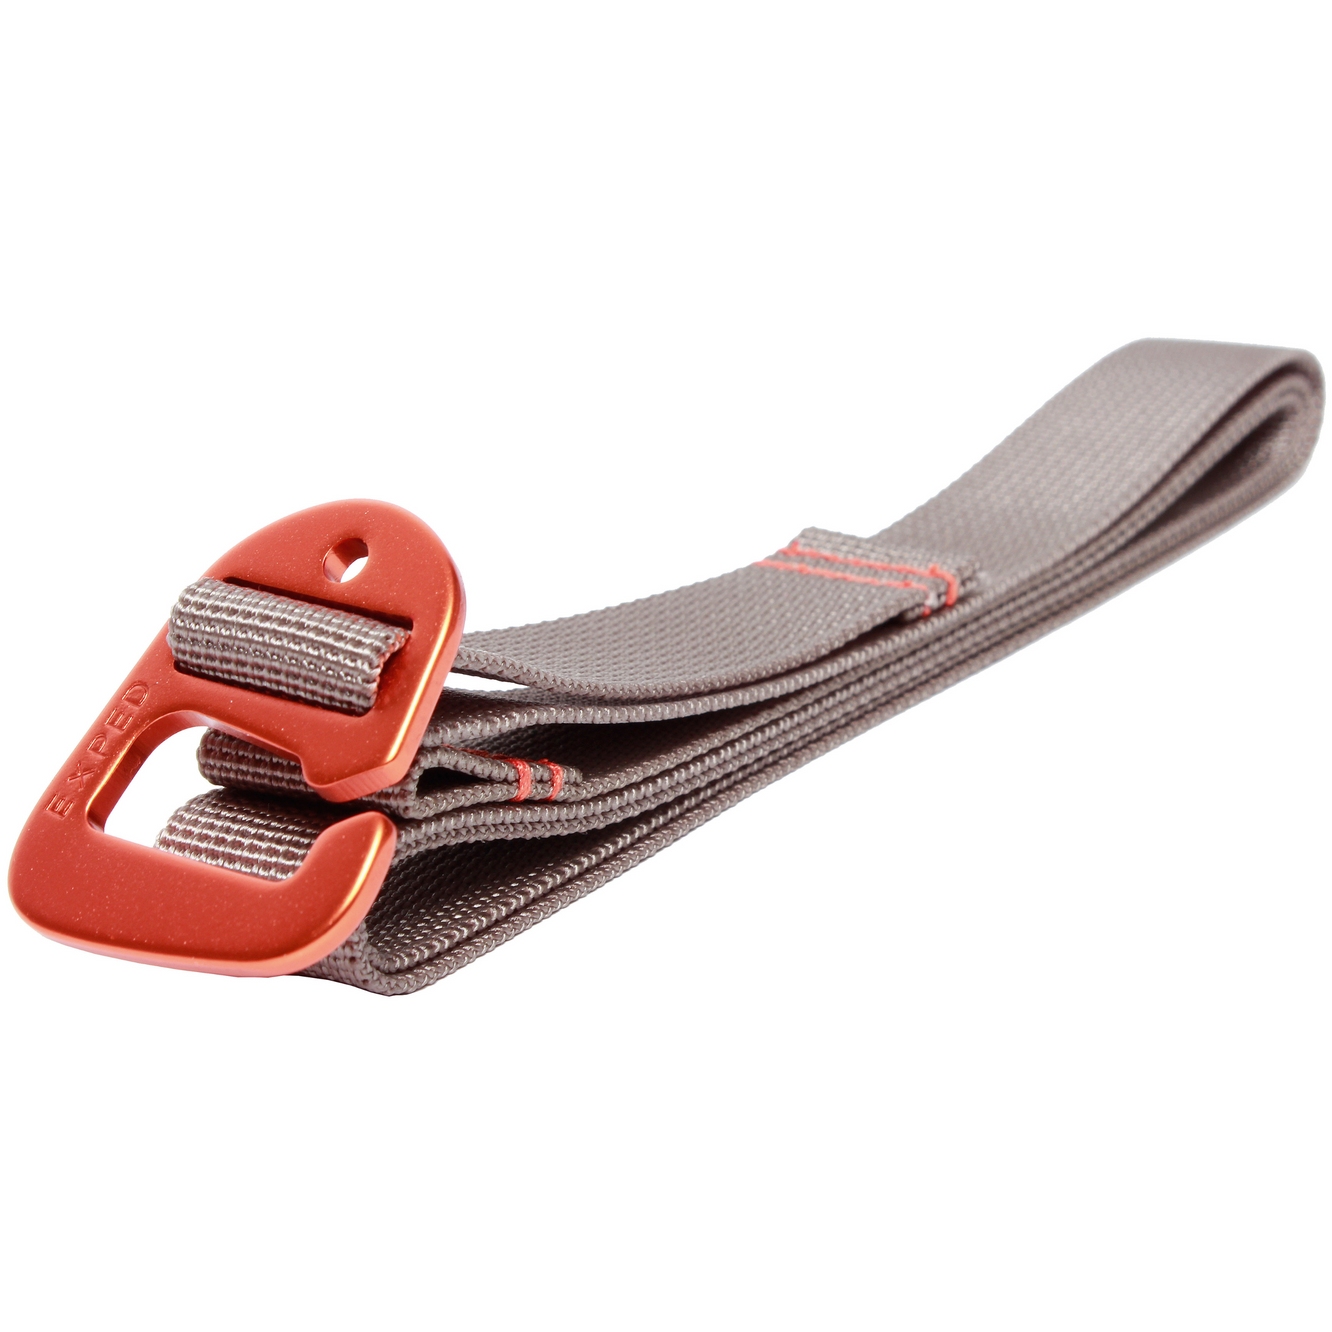 Produktbild von Exped Accessory Strap Gurtband (2er Pack) - 120cm | Grau-Terracotta